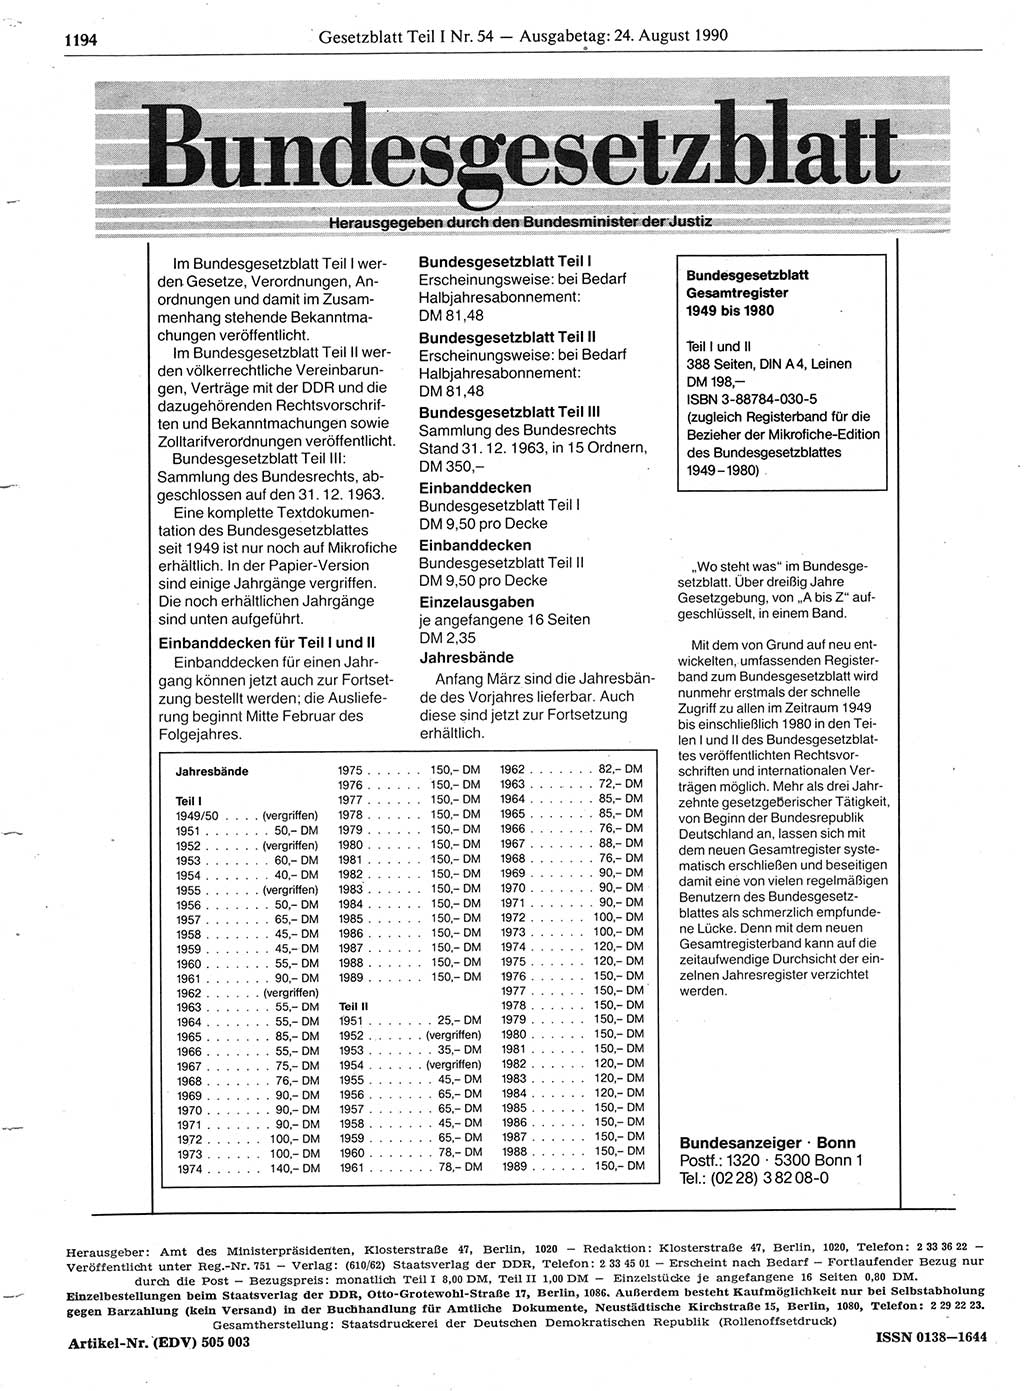 Gesetzblatt (GBl.) der Deutschen Demokratischen Republik (DDR) Teil Ⅰ 1990, Seite 1194 (GBl. DDR Ⅰ 1990, S. 1194)